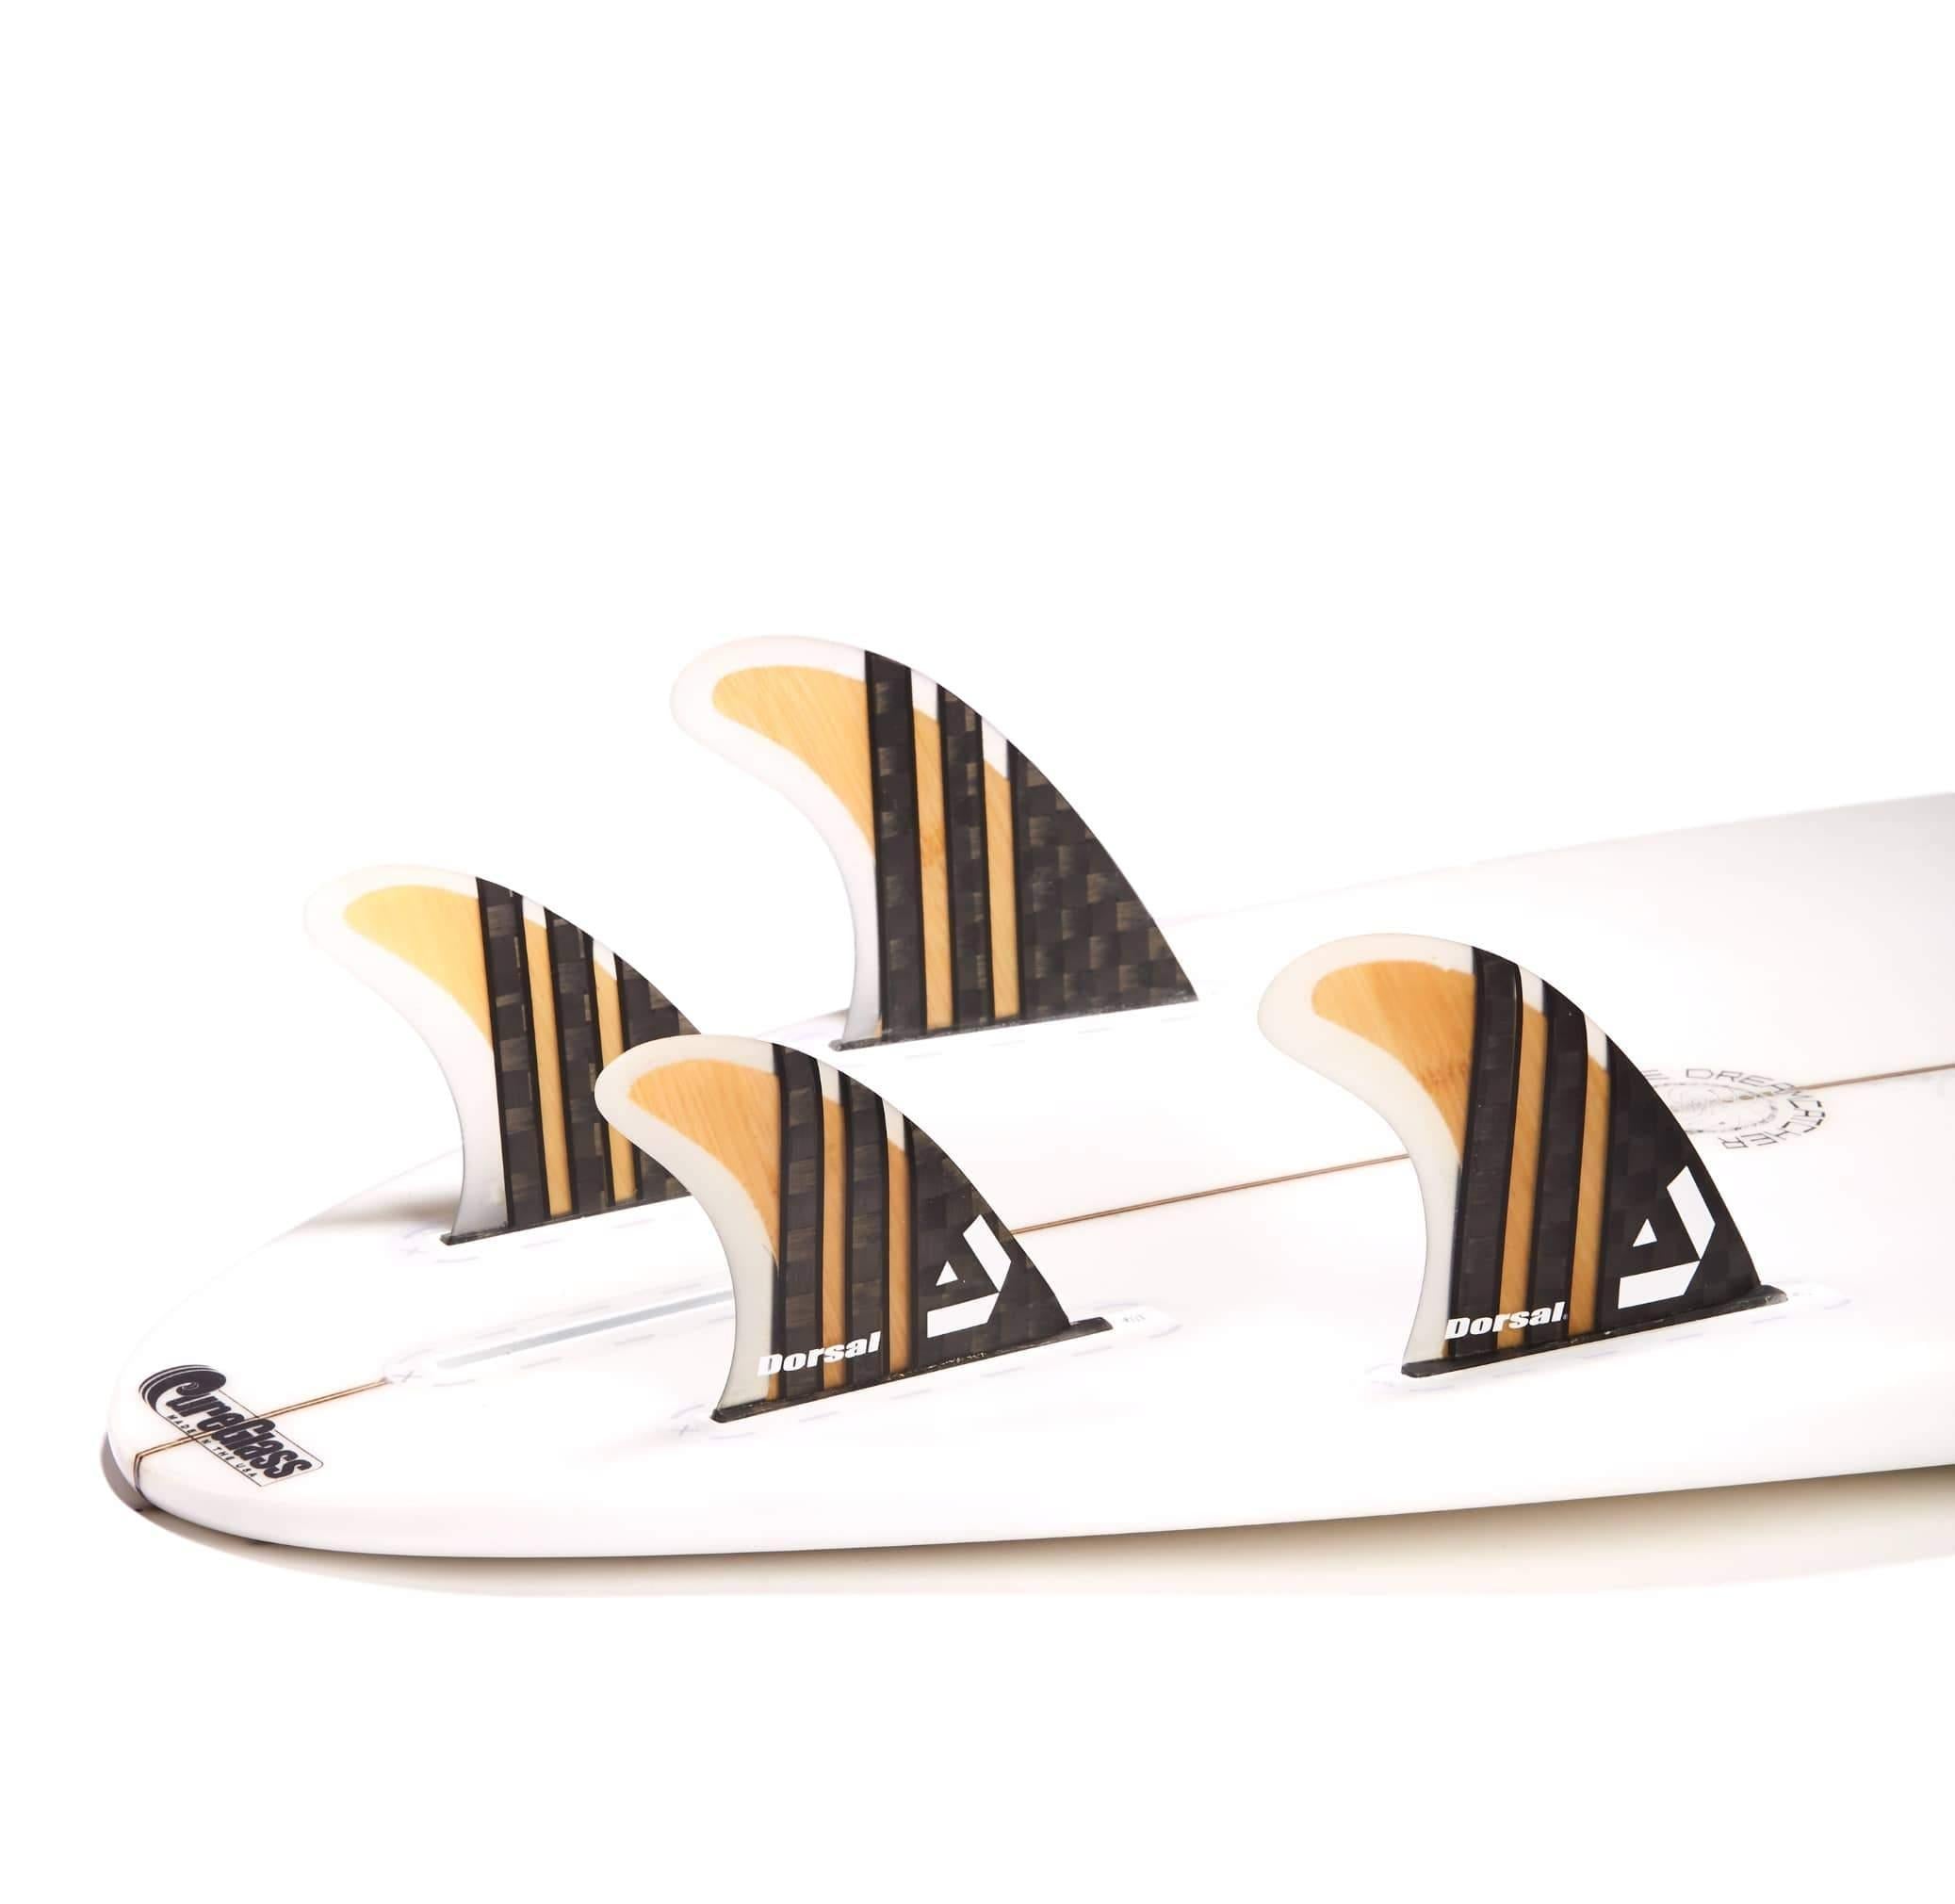 DORSAL Surfboard Fins Carbon Bamboo Quad Set (4) Honeycomb FUT